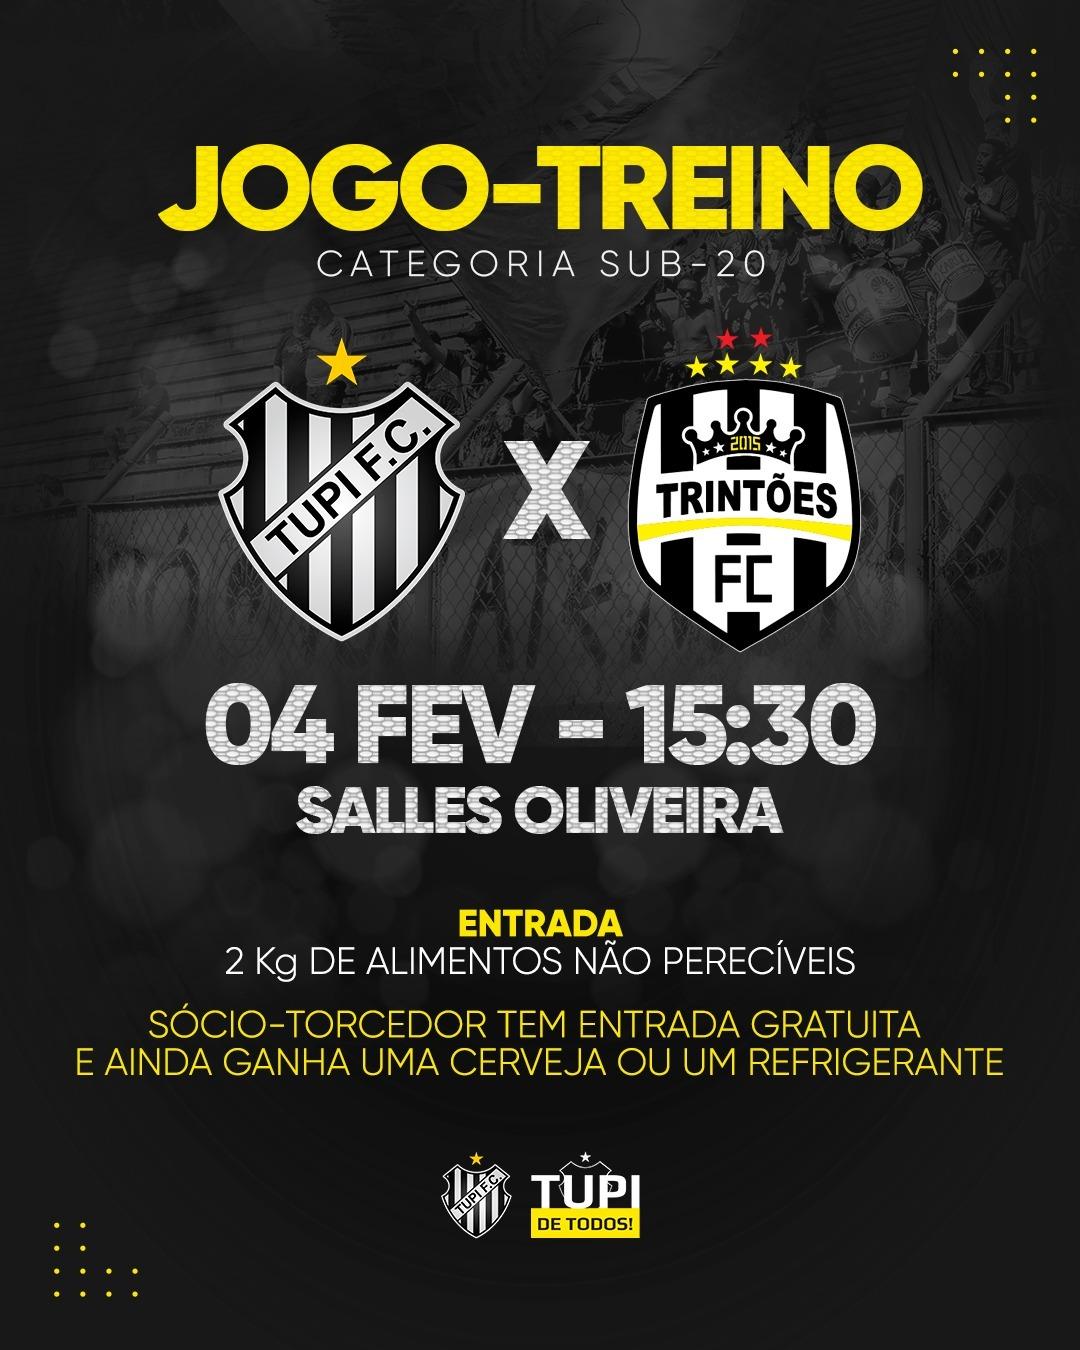 Acontecerá neste sábado (04) jogo-treino entre Tupi e Trintões Futebol Clube